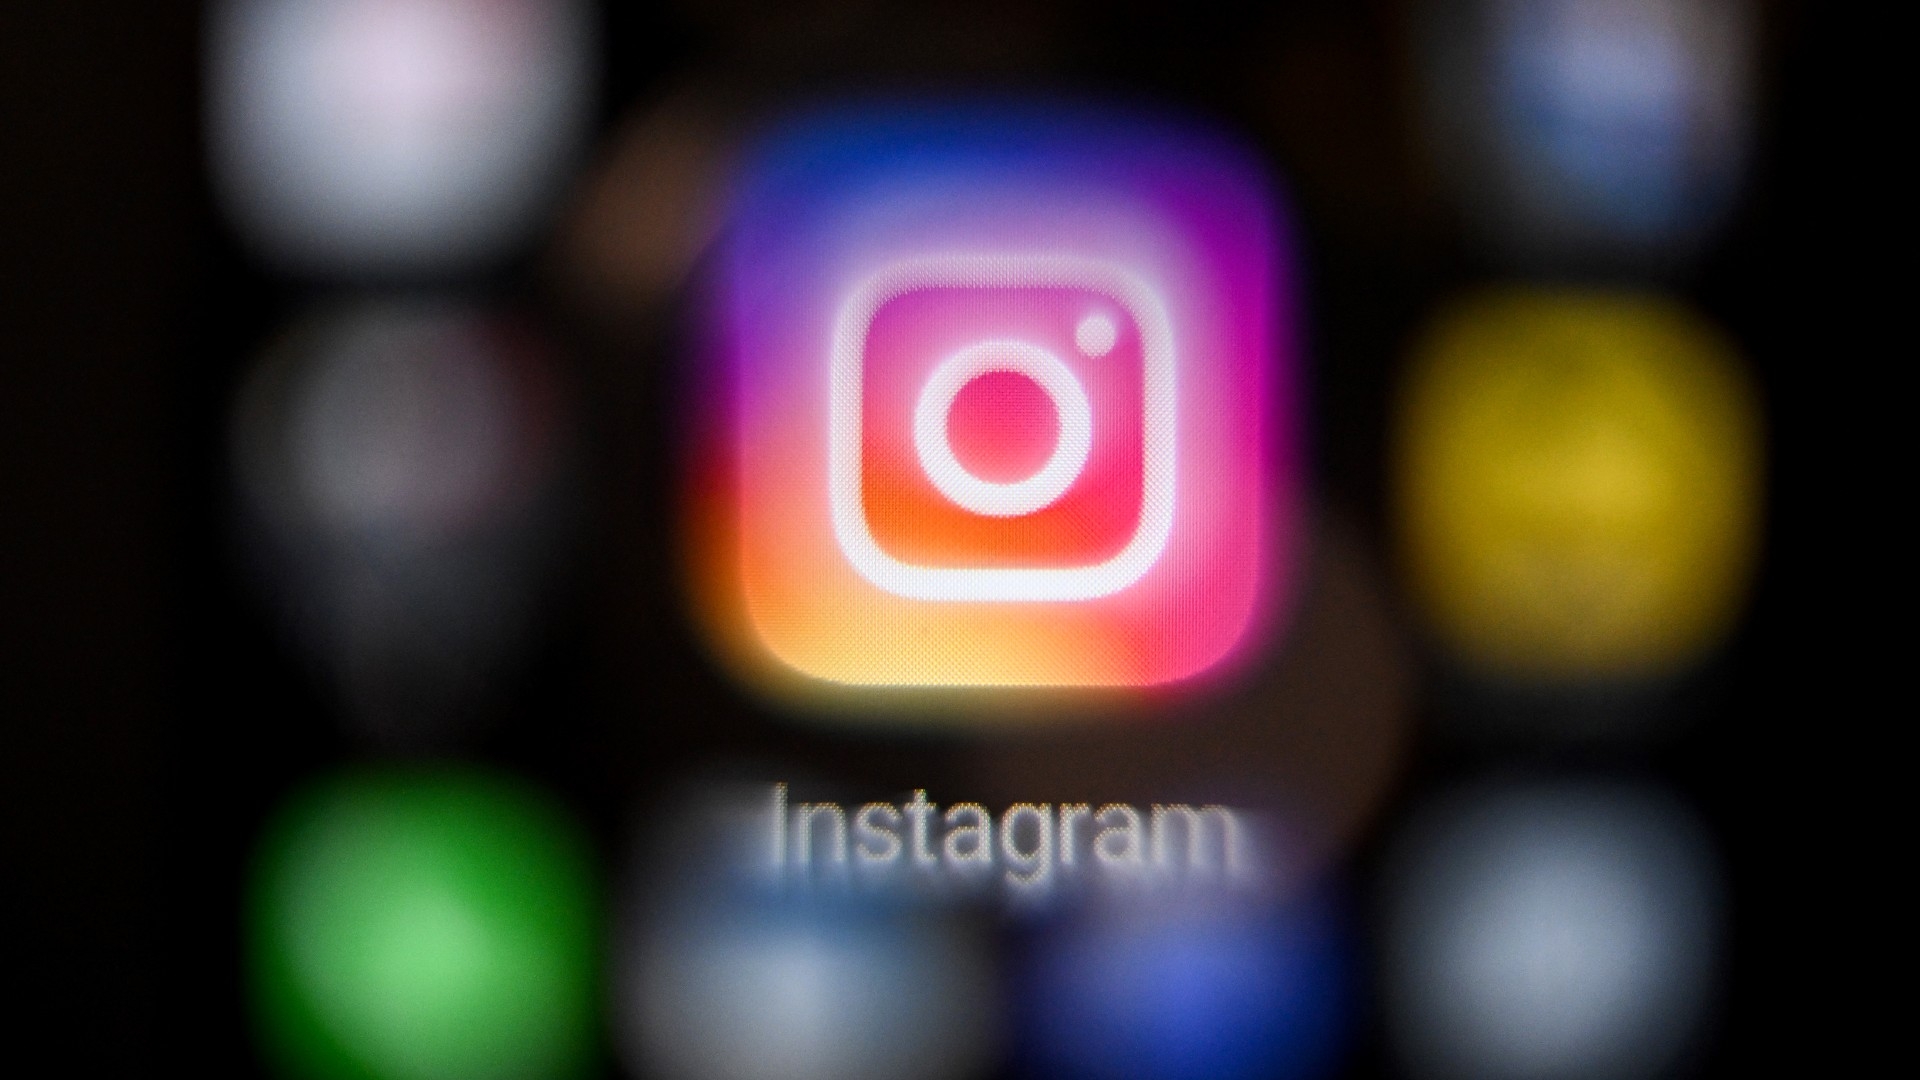 Instagram logo in focus